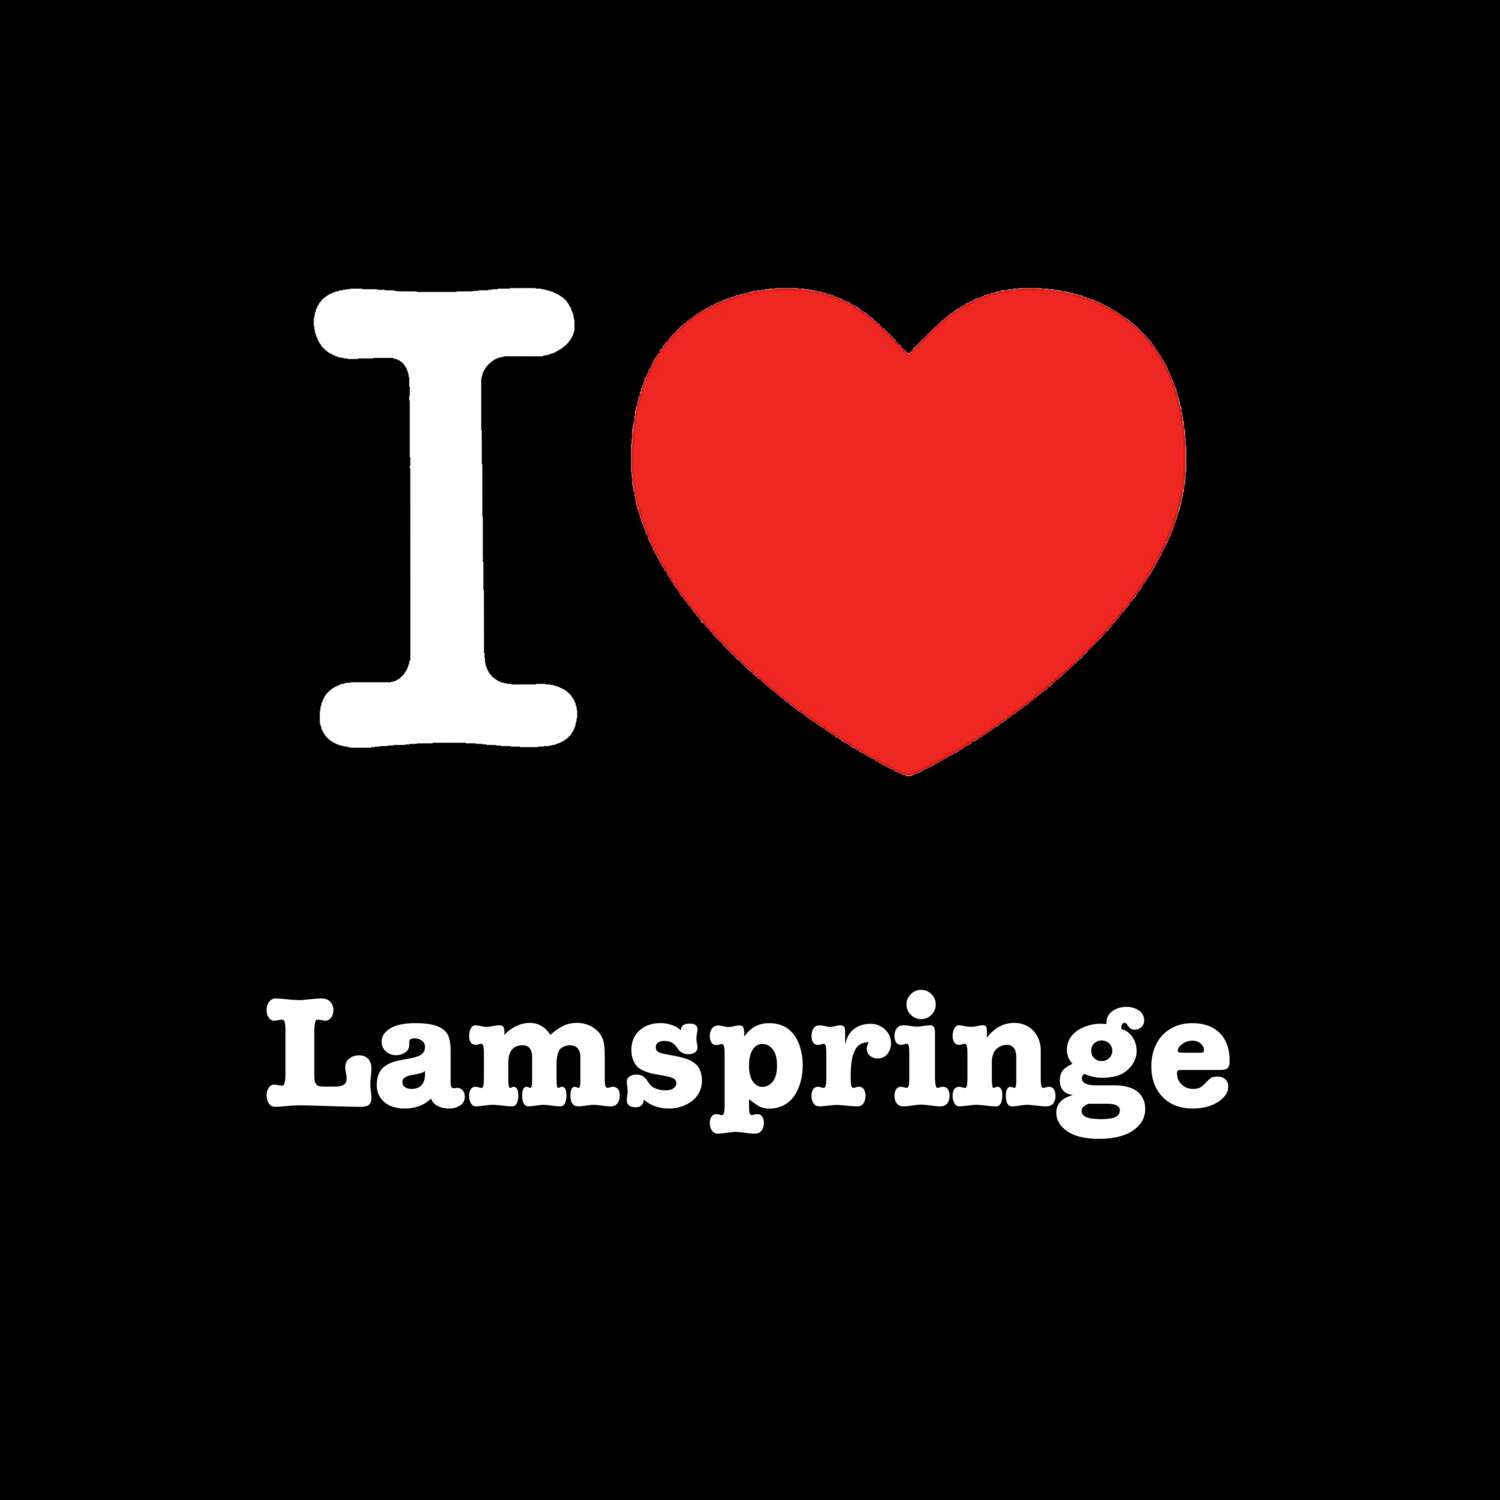 Lamspringe T-Shirt »I love«